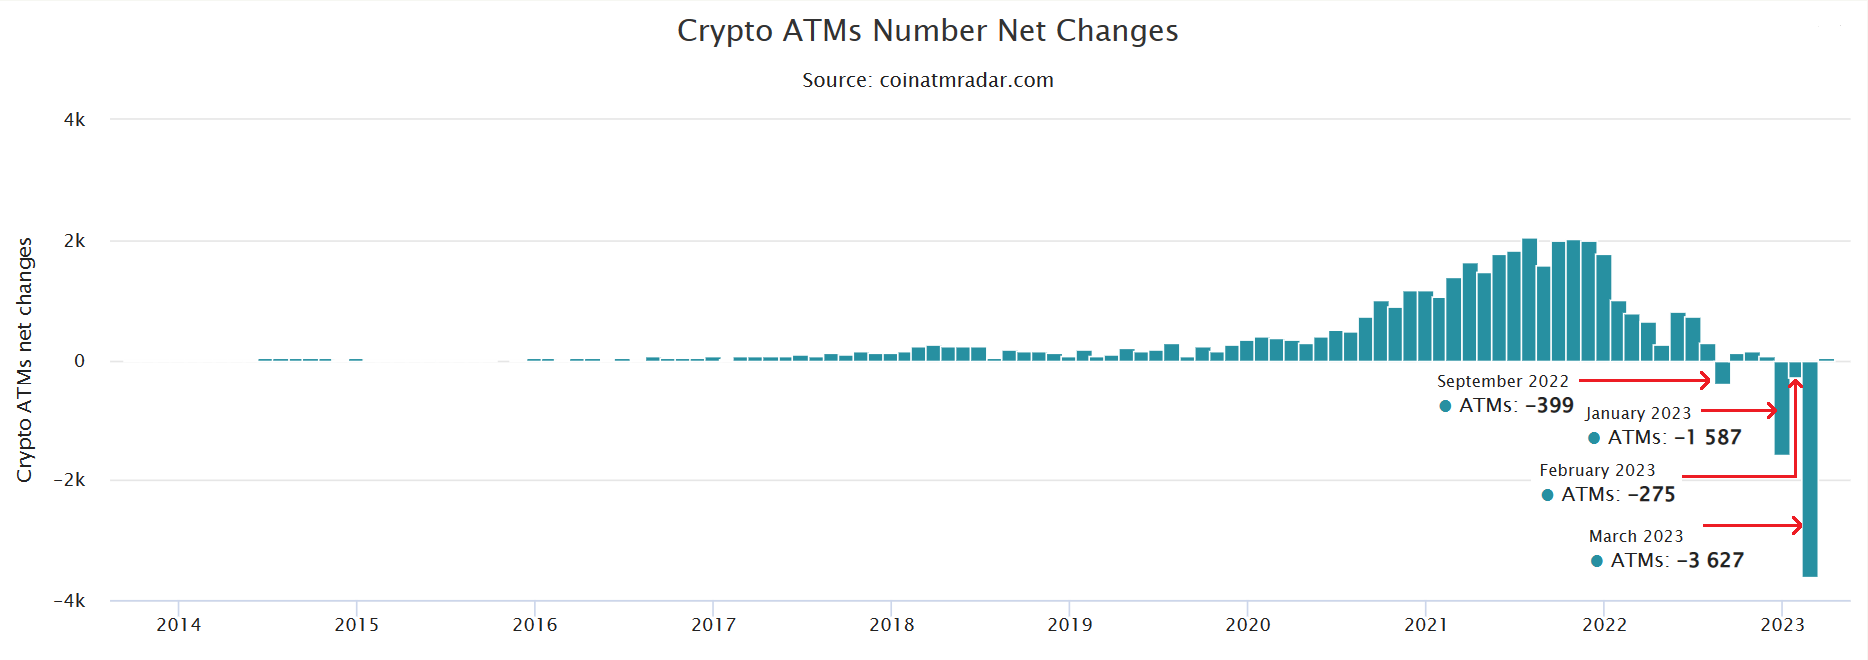 Yli 3,600 Bitcoin-pankkiautomaattia meni offline-tilaan ennätysten suurimman kuukausittaisen laskun